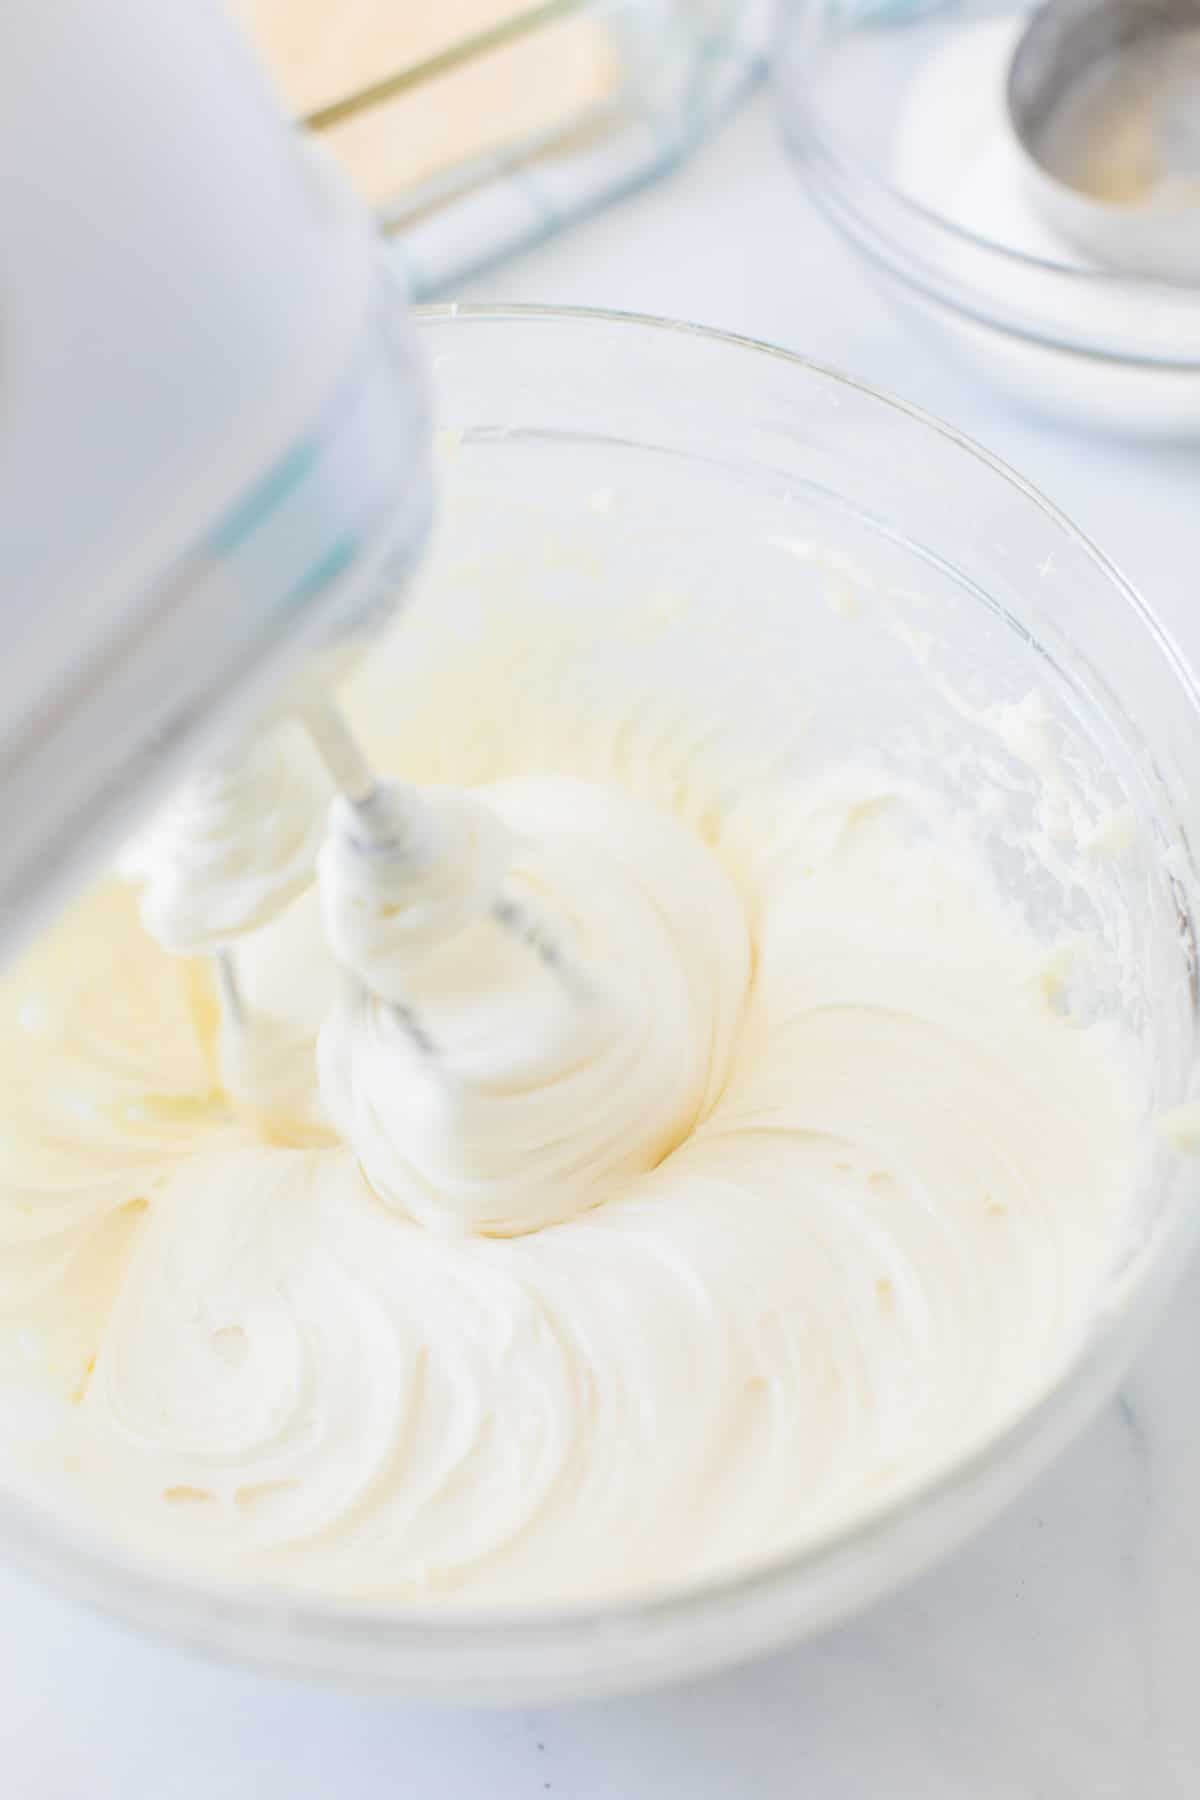 Batidora de mano para mezclar queso crema y azúcar para tarta de queso sopapilla